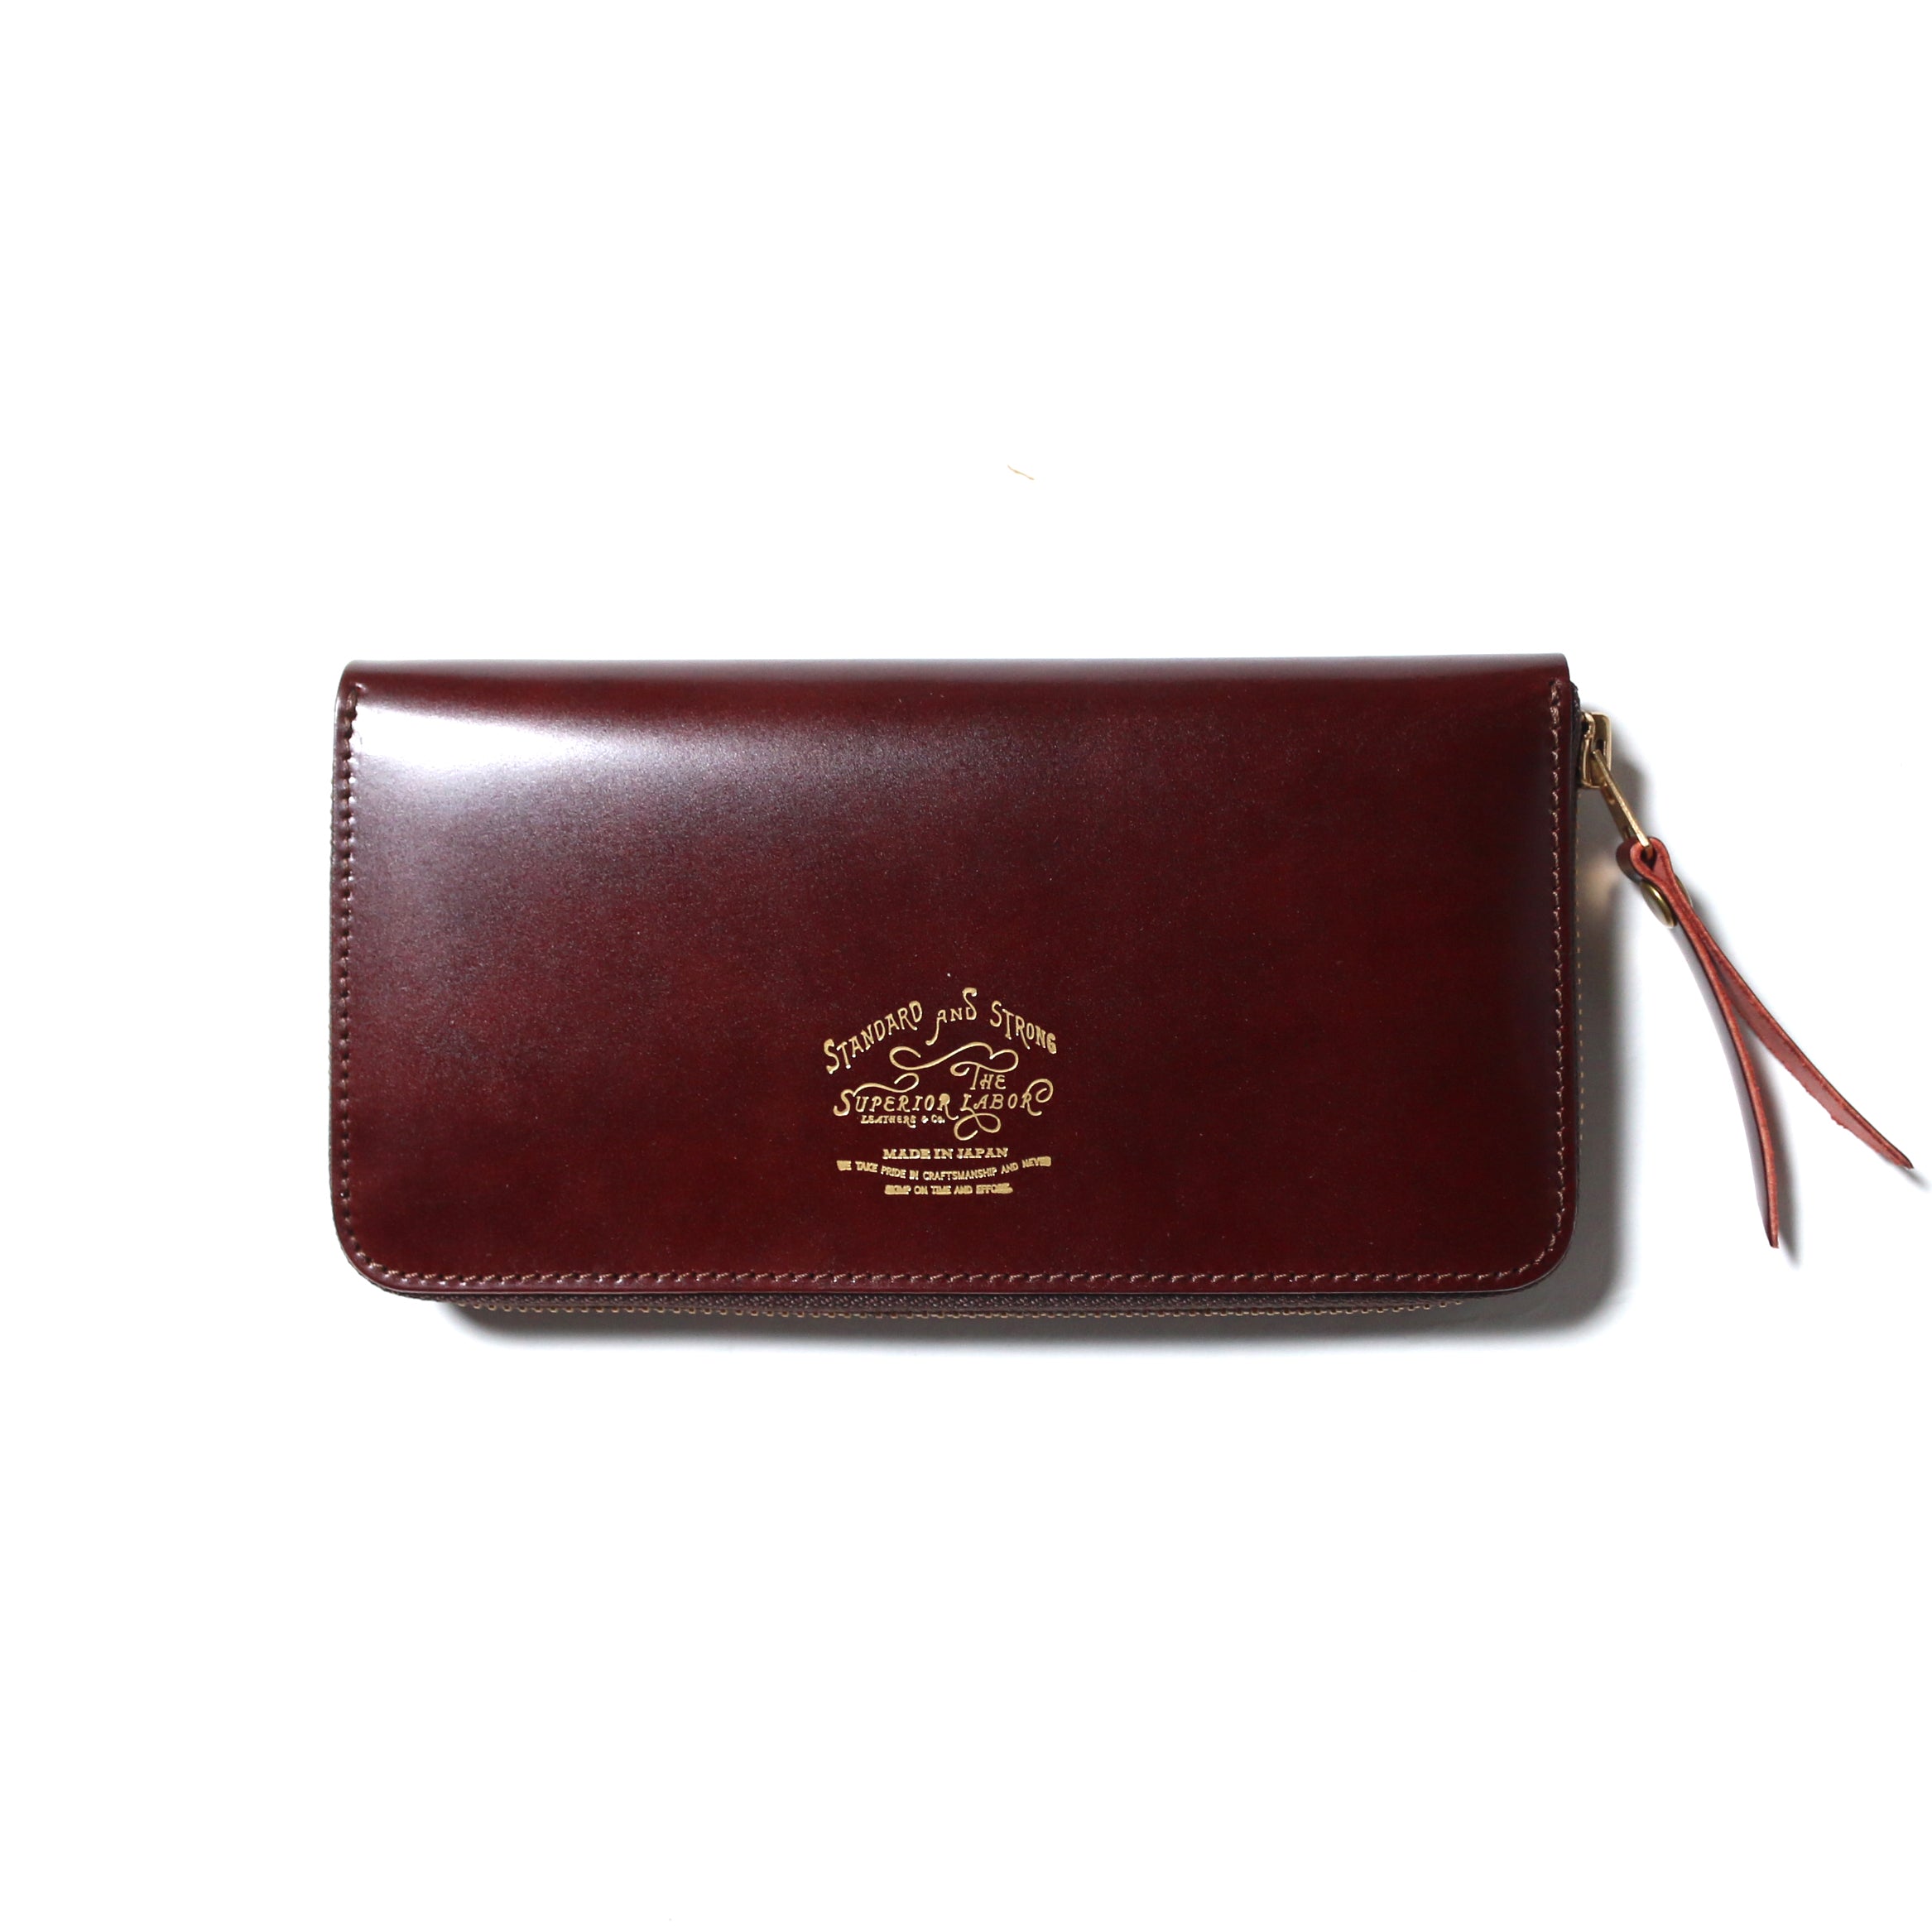 SL190 cordovan vertical zip wallet